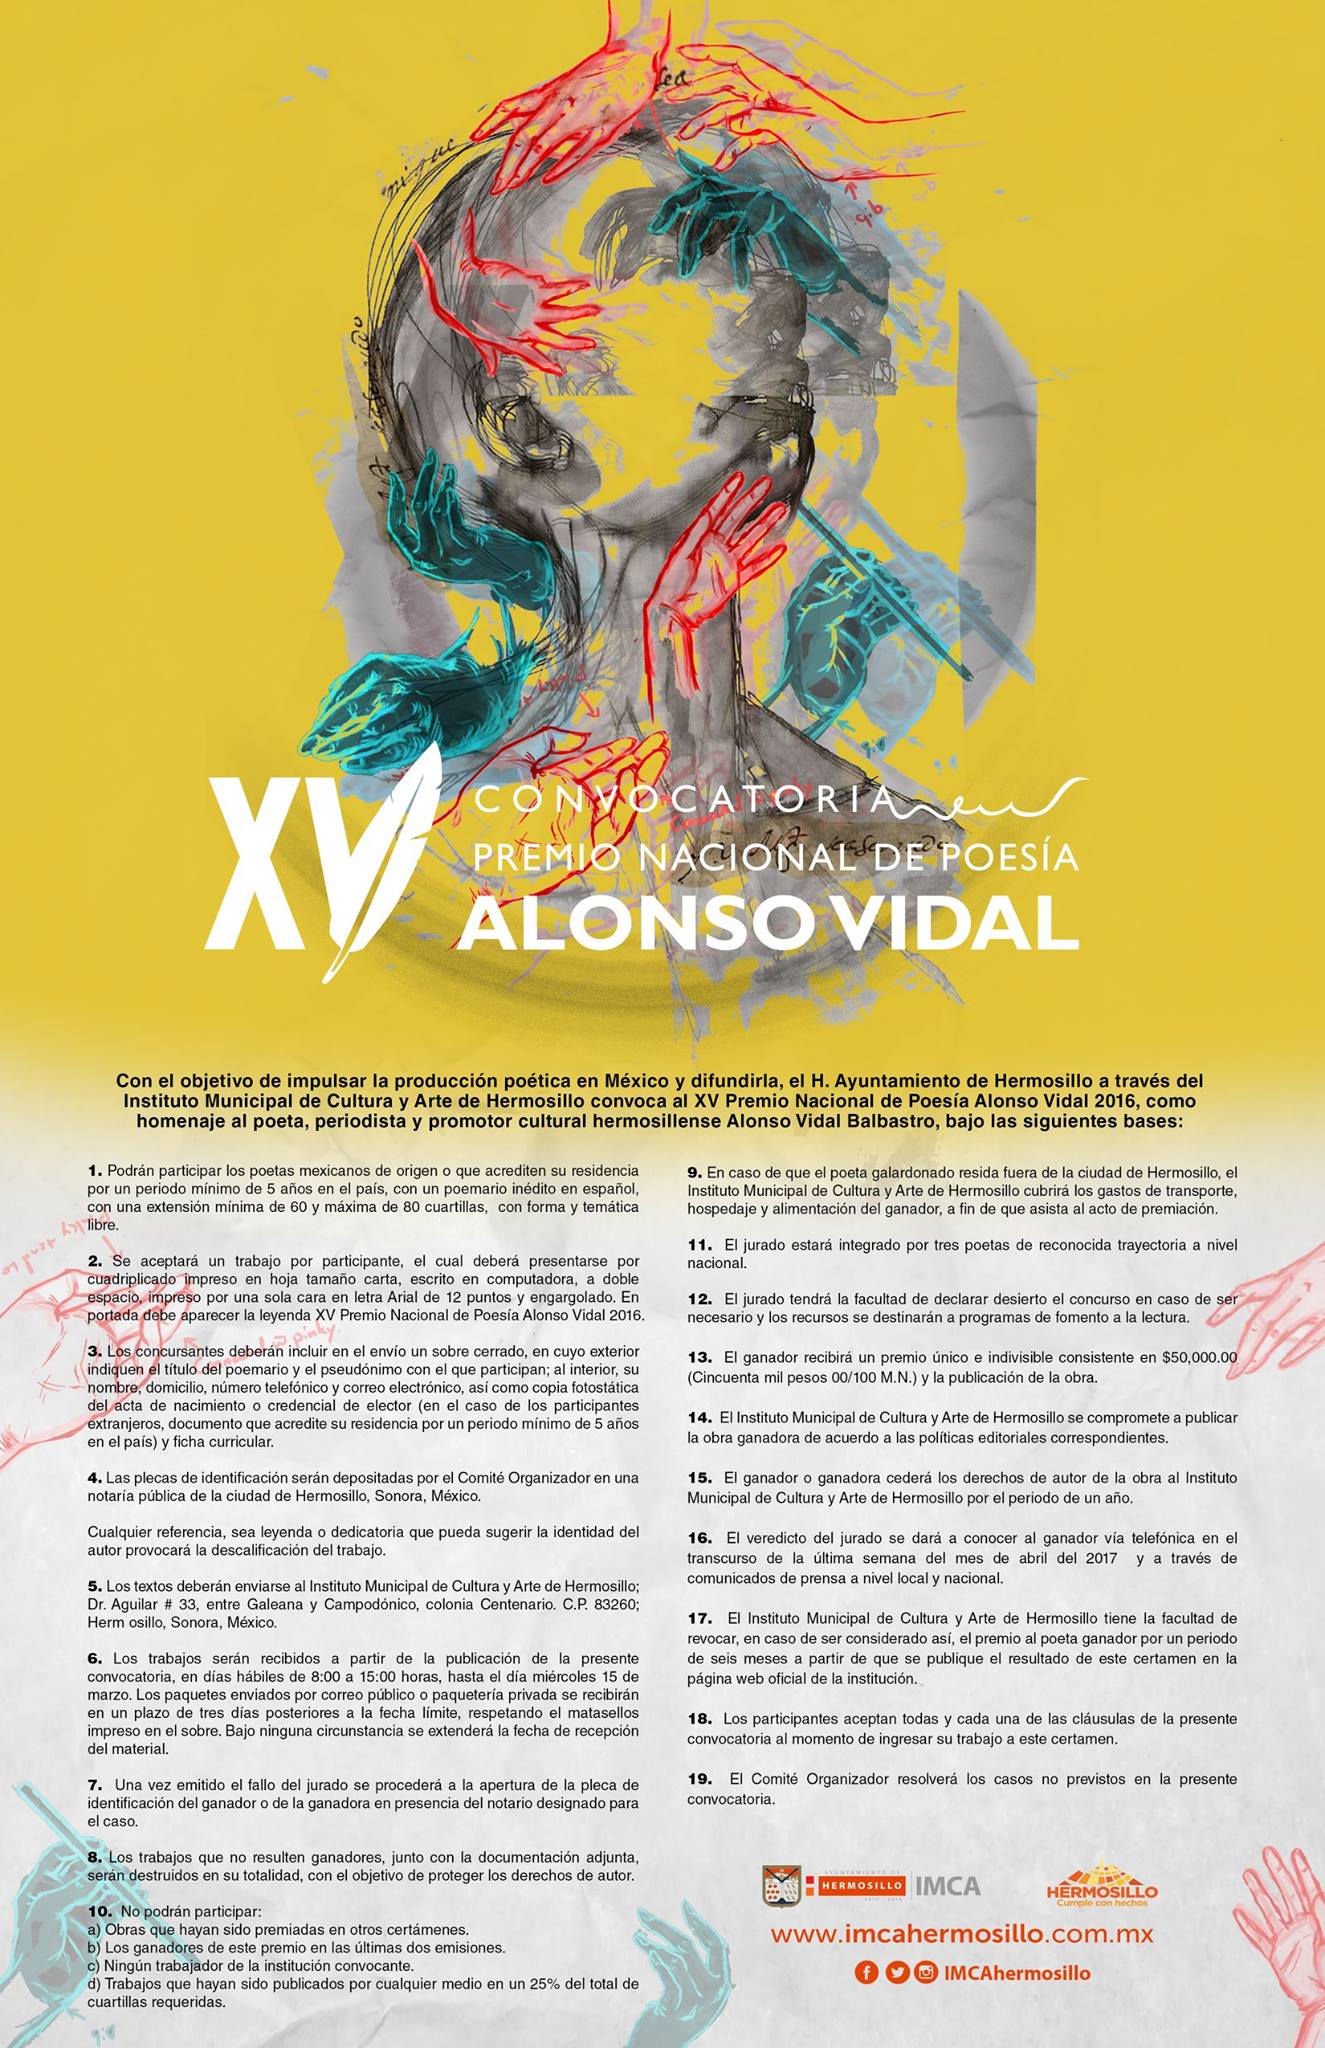 Lanza IMCA convocatoria del XV Premio Nacional de Poesía “Alonso Vidal”